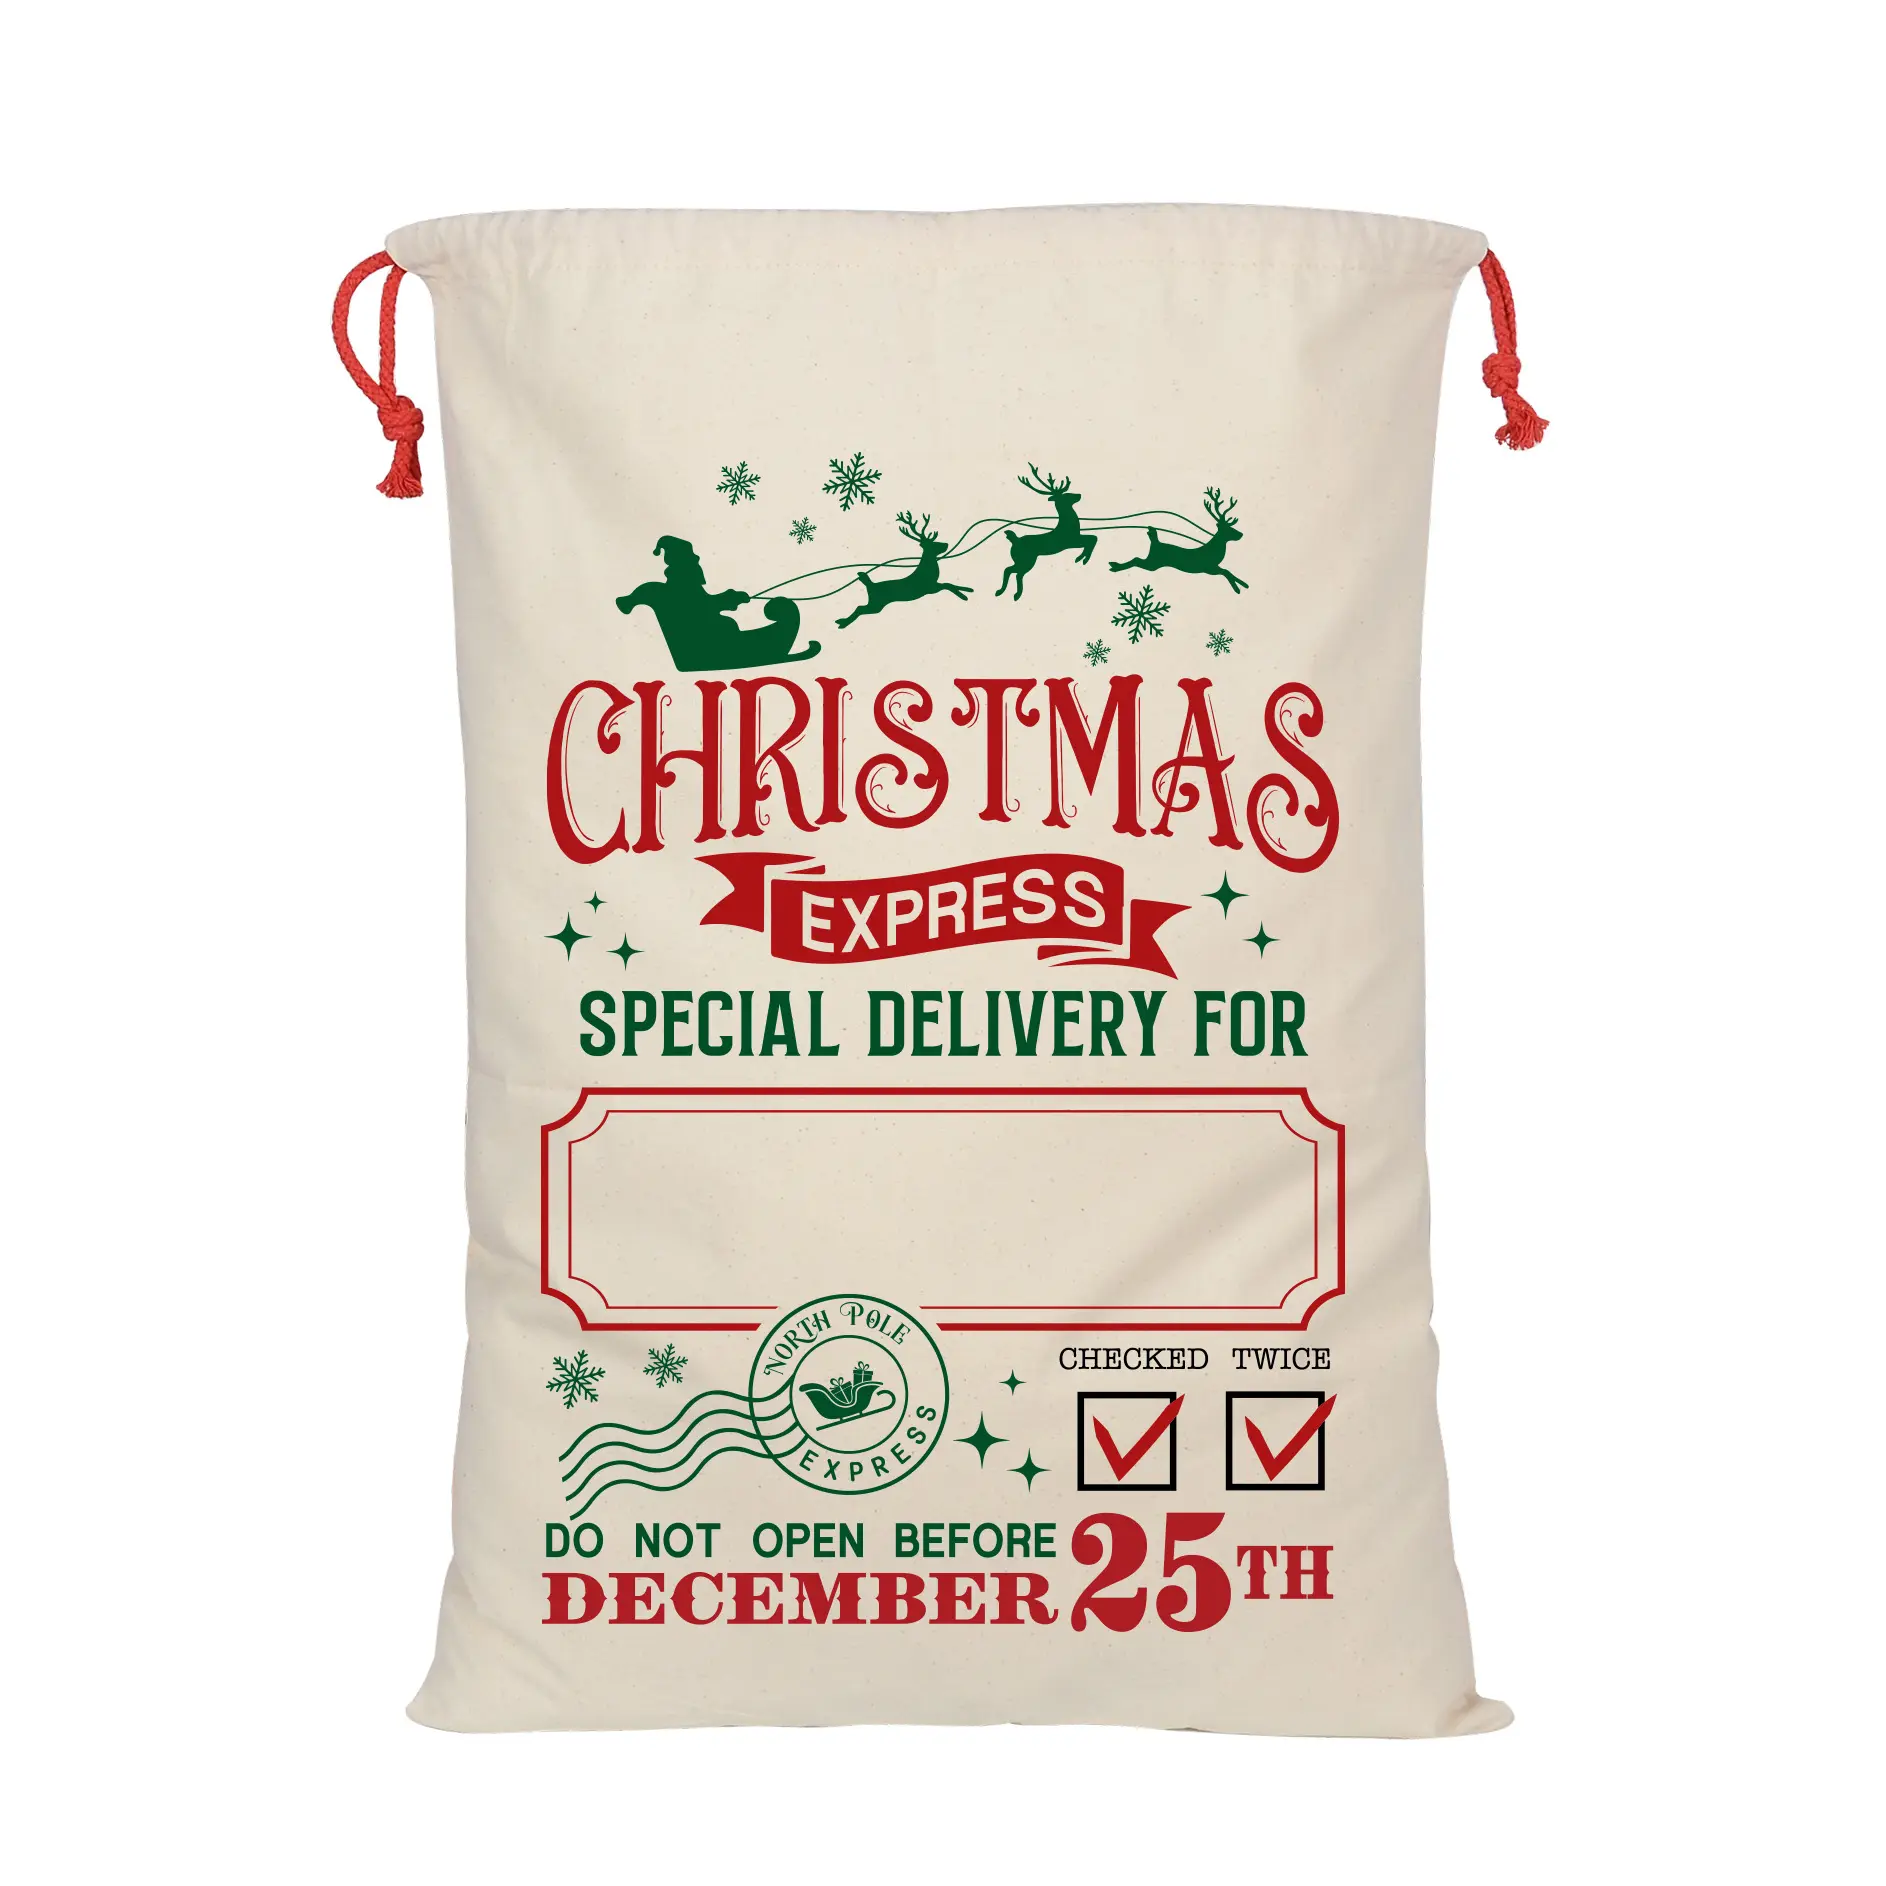 Leinwand Weihnachts tasche 50*70 Weihnachts geschenk Tasche Kordel zug Siebdruck Weihnachts tasche DIY Hersteller Großhandel